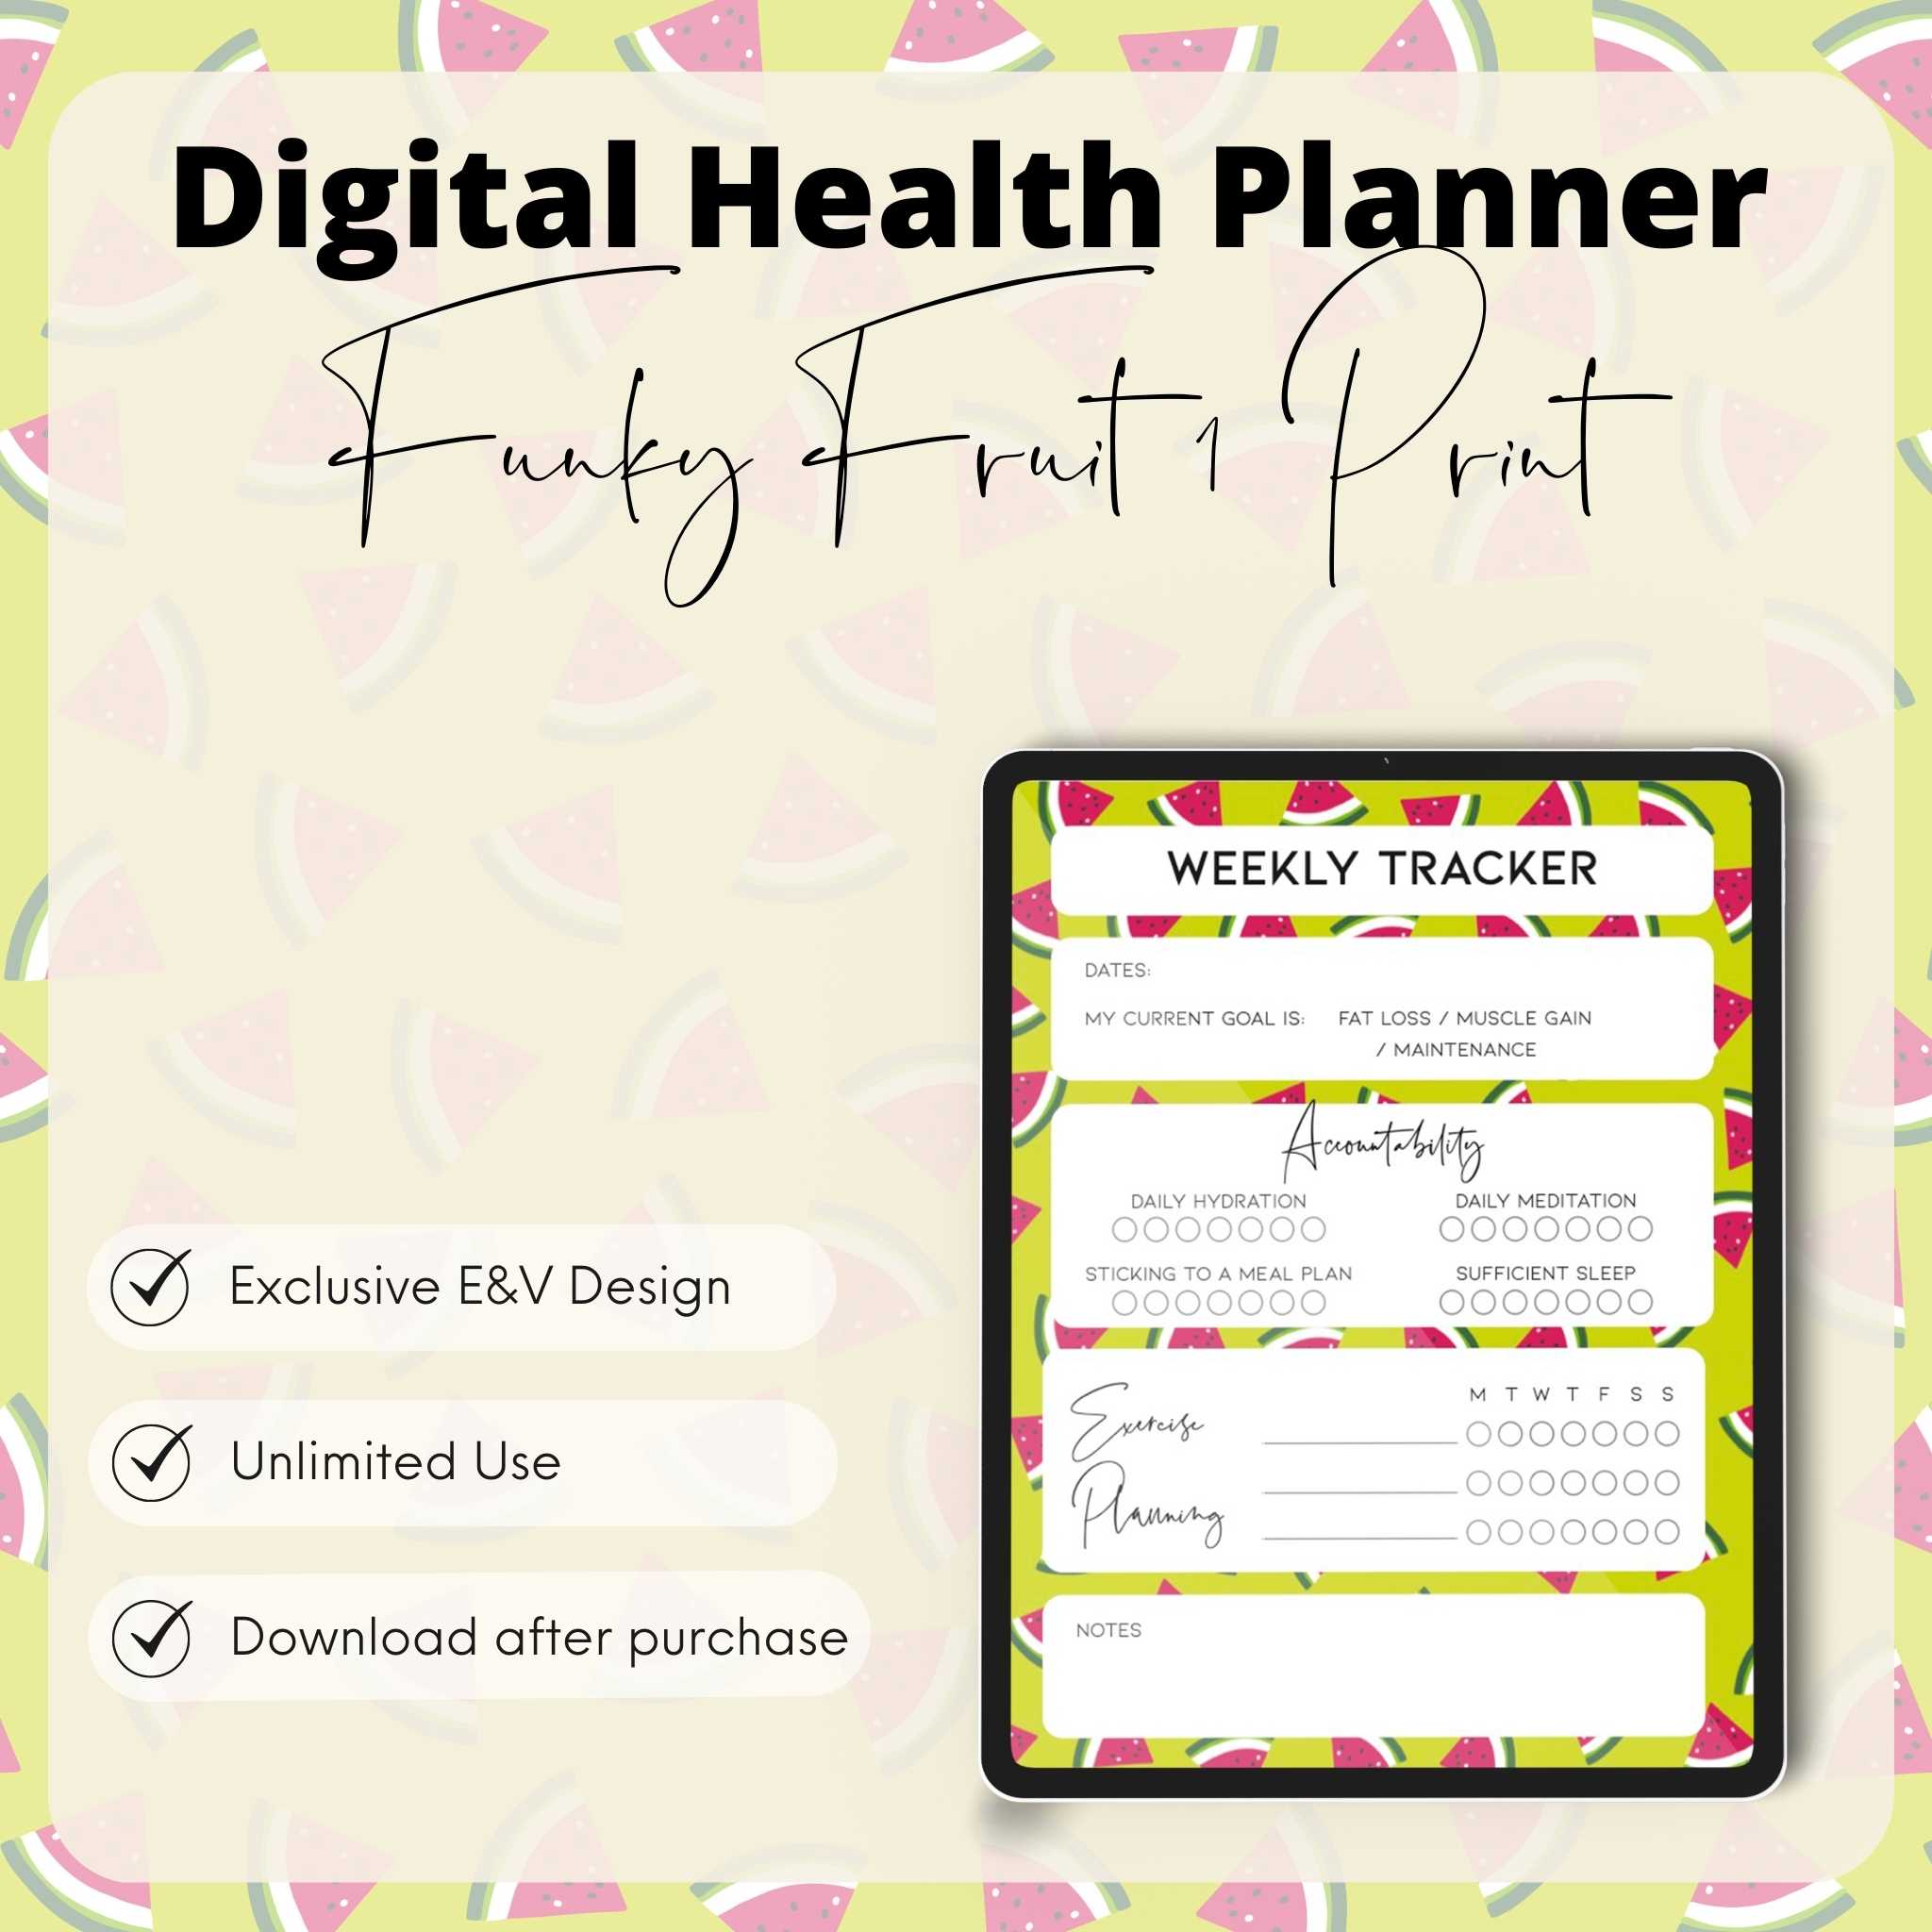 DIGITAL HEALTH PLANNER (Funky Fruits 1 Print)